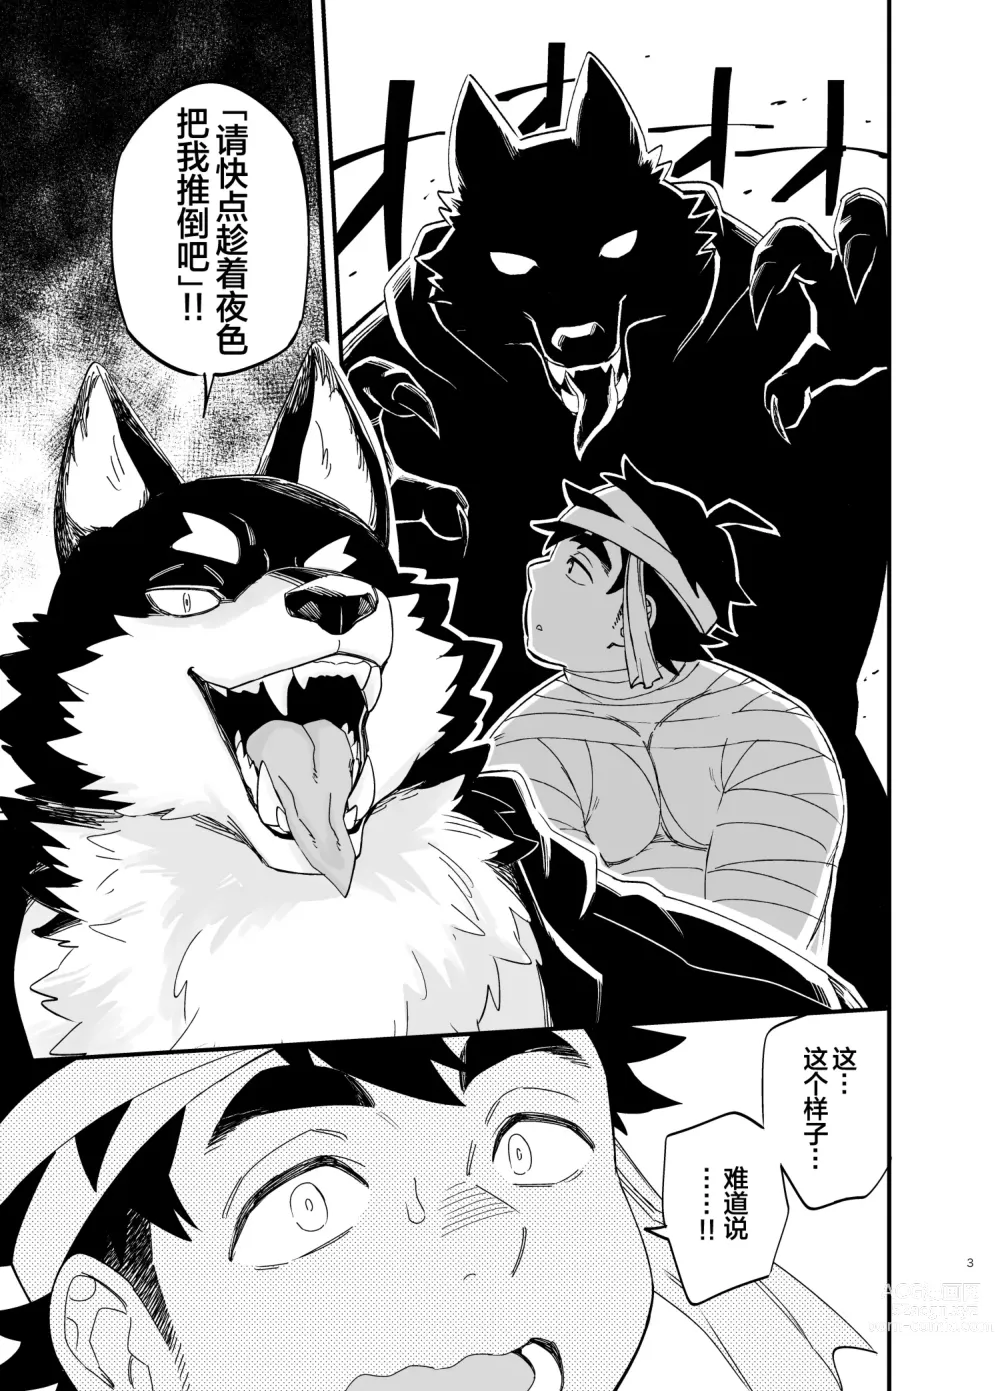 Page 4 of manga オオカミなんかこわくない！